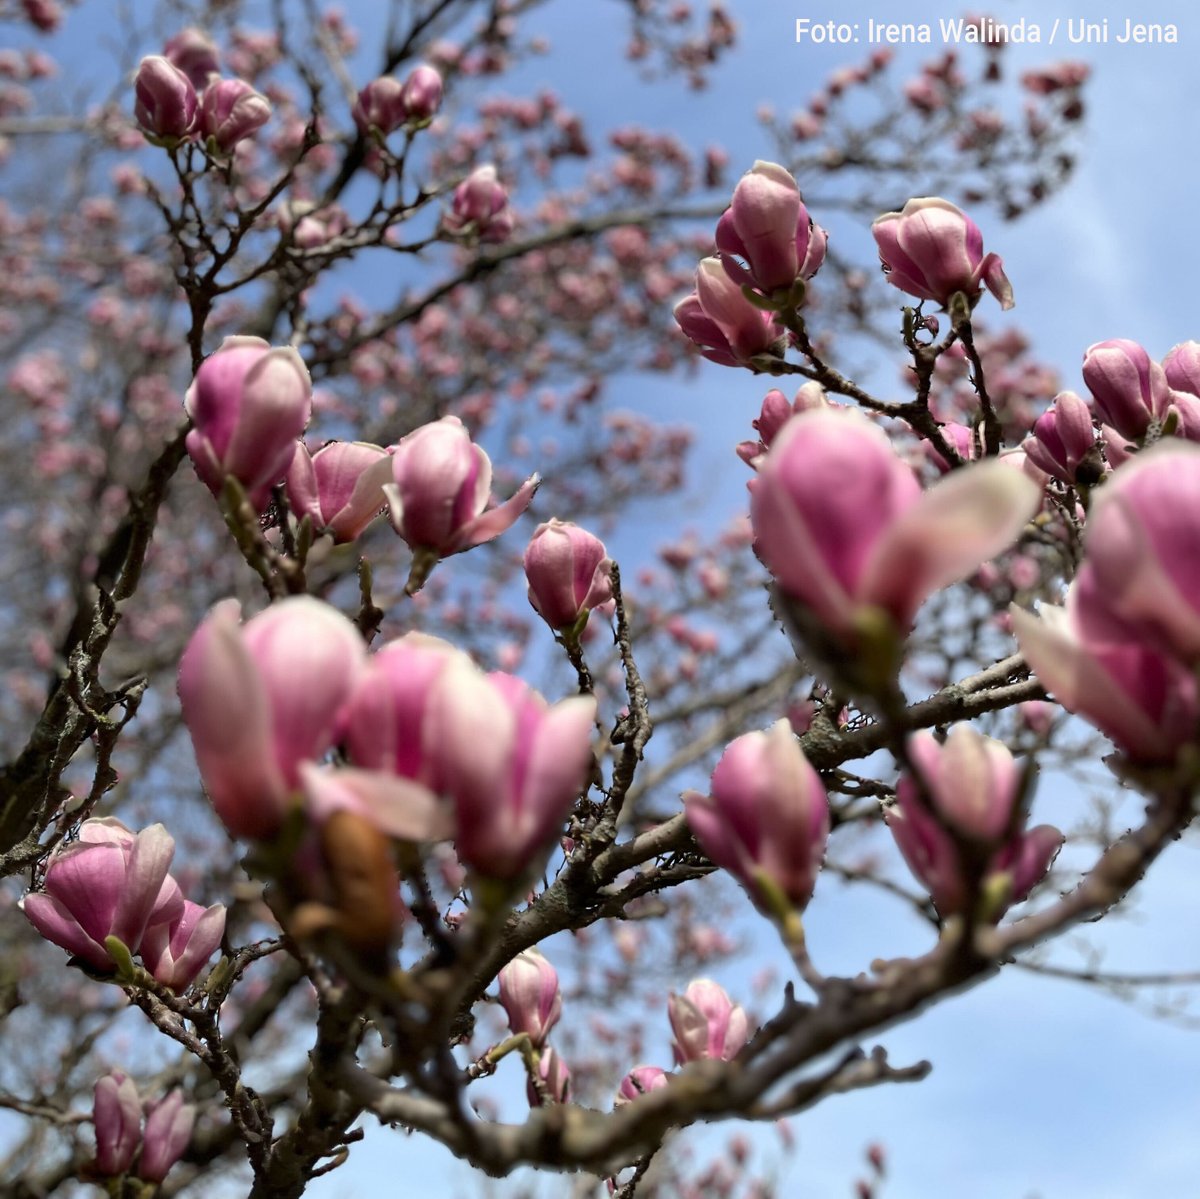 Wir wünschen euch eine schöne Osterzeit! 🌼🌈 ☀️ 🐣 🐰 Vielleicht nutzt ihr die Zeit ja für einen Spaziergang. In Botanischen Garten der @UniJena etwa verbreitet derzeit die Magnolienblüte Frühlingsstimmung. 🌸